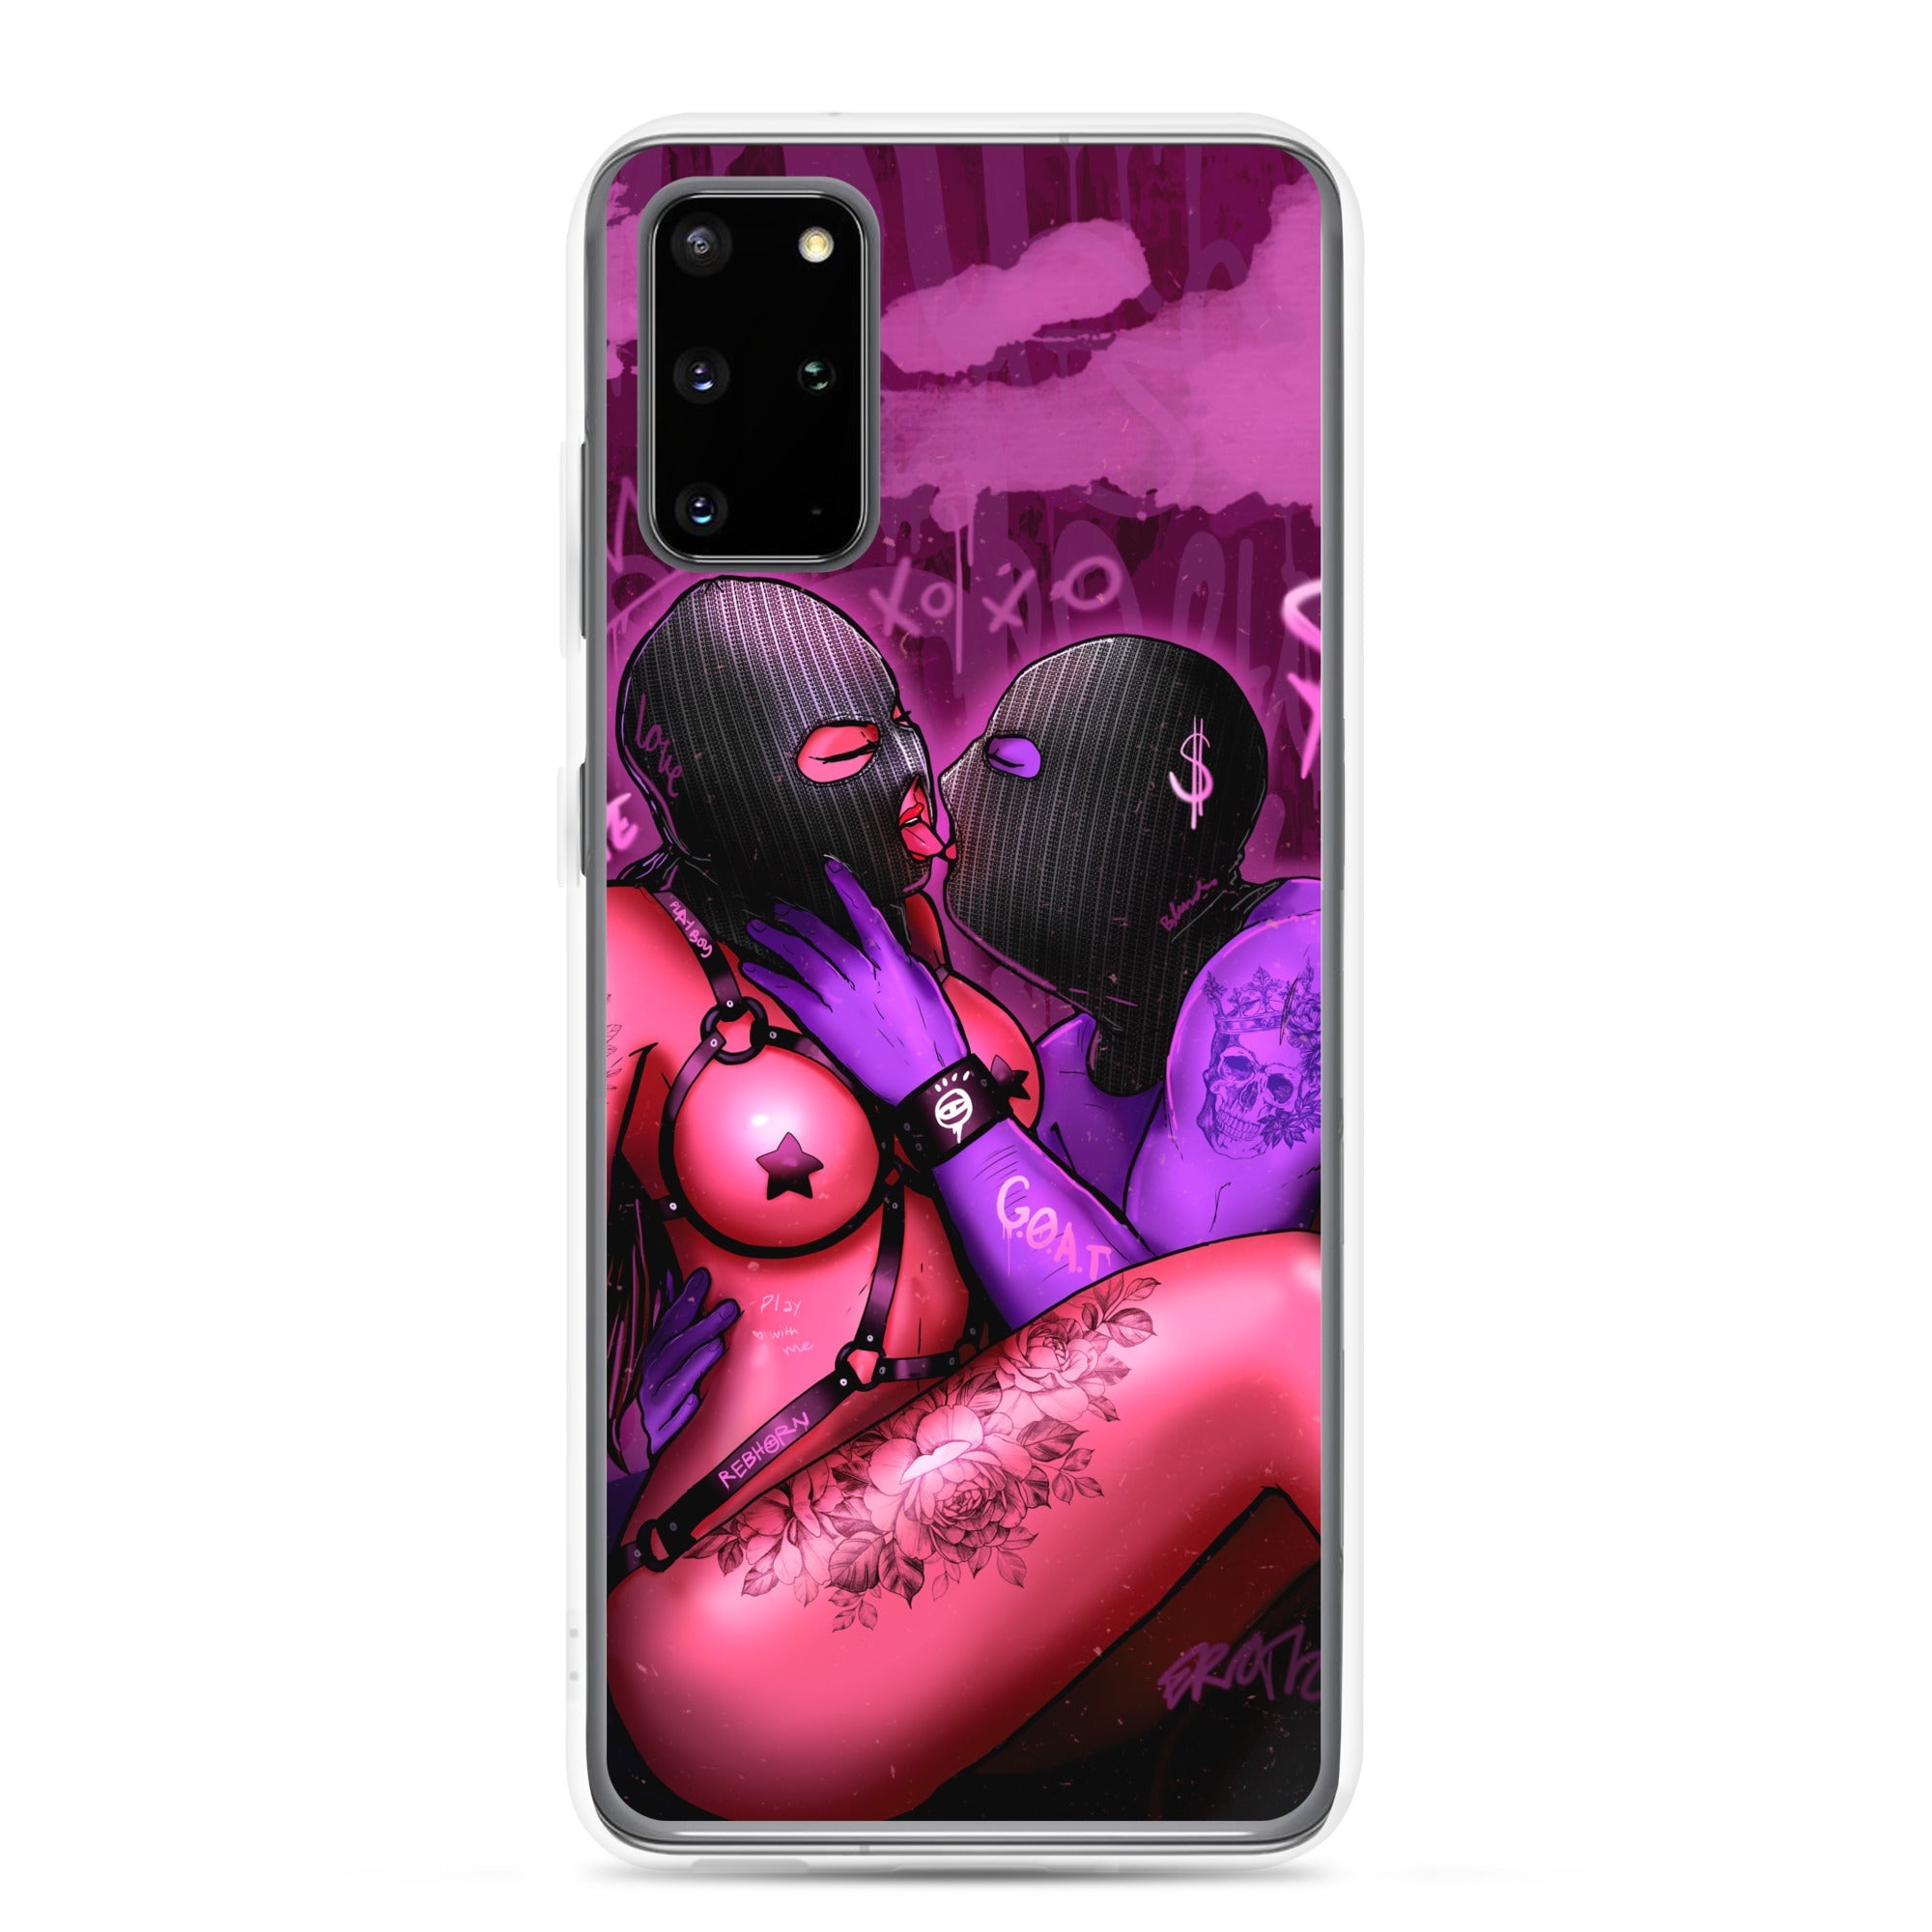 Erotica - Blinded By Love Samsung Case - REBHORN DESIGN